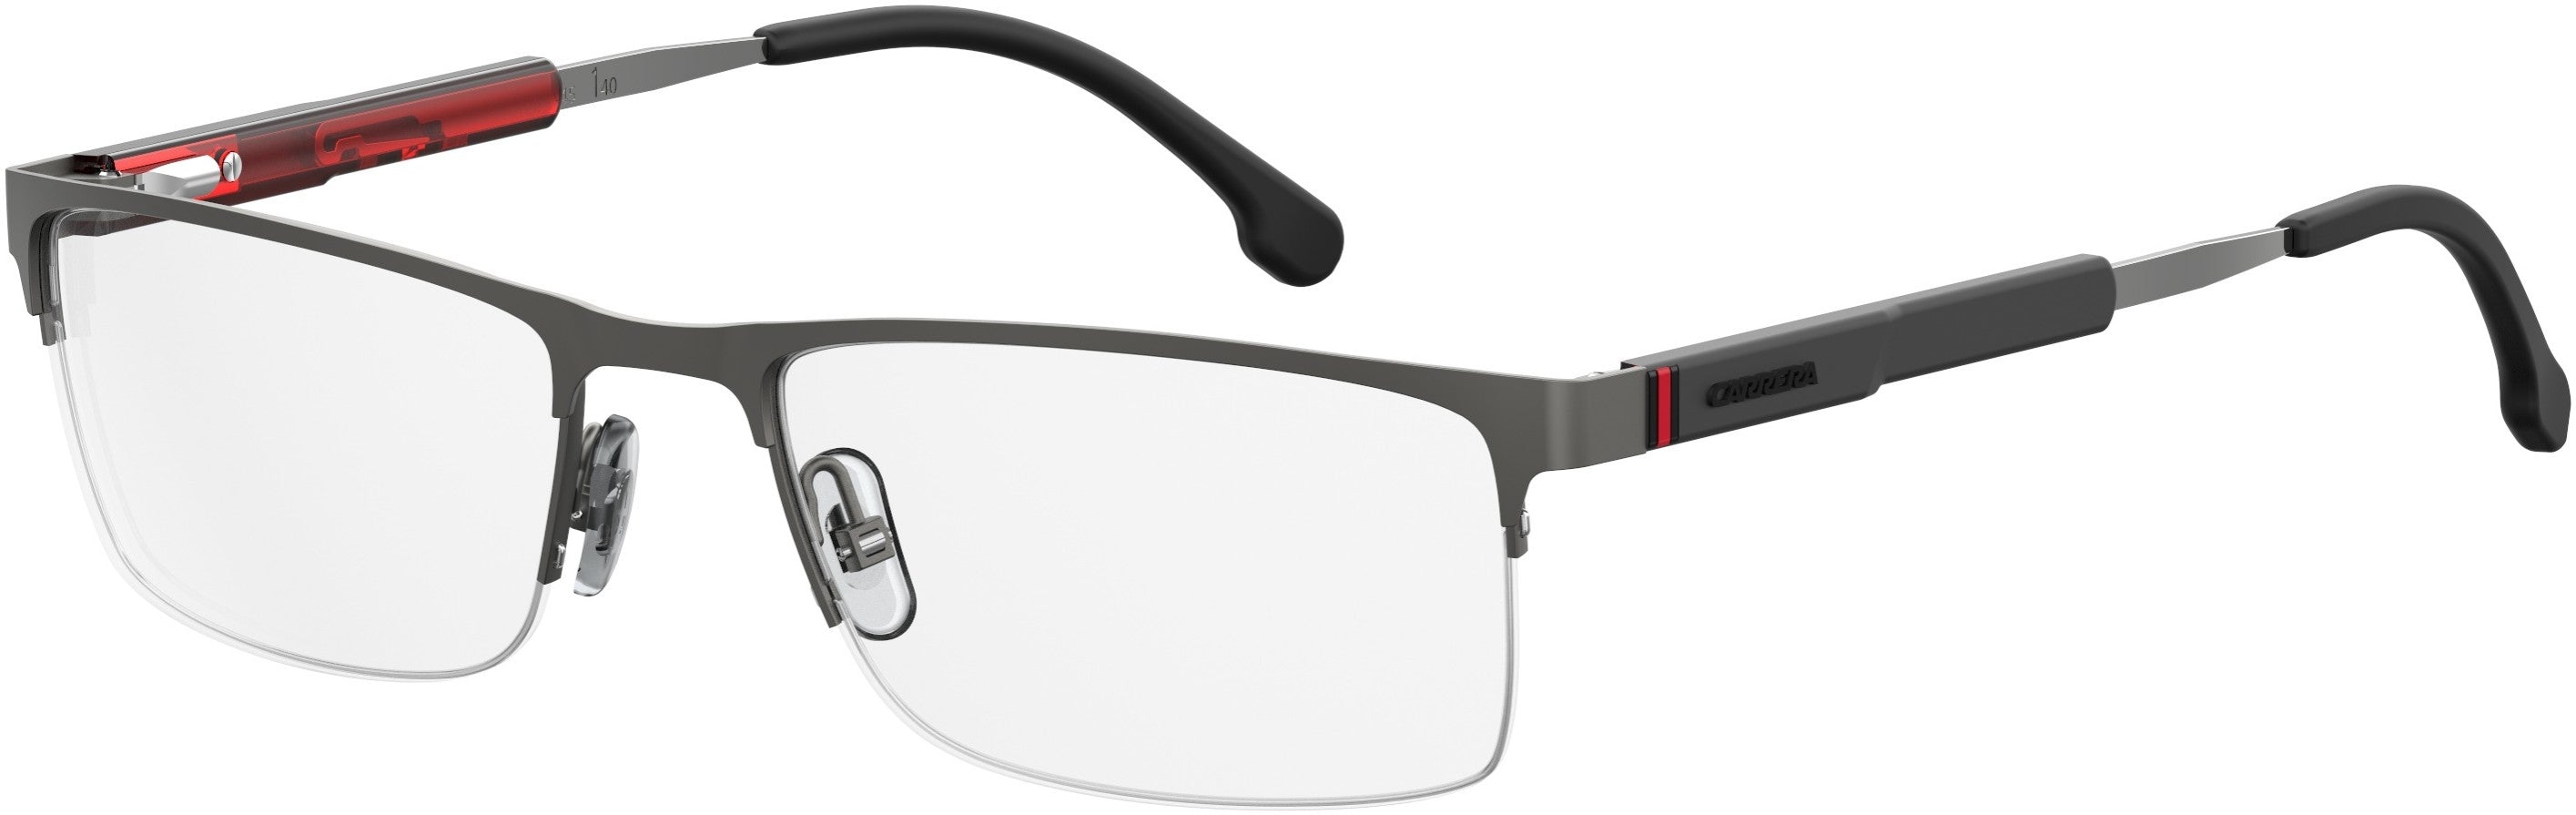  Carrera 8835 Rectangular Eyeglasses 0R80-0R80  Semi Matte Dark Ruthenium (00 Demo Lens)